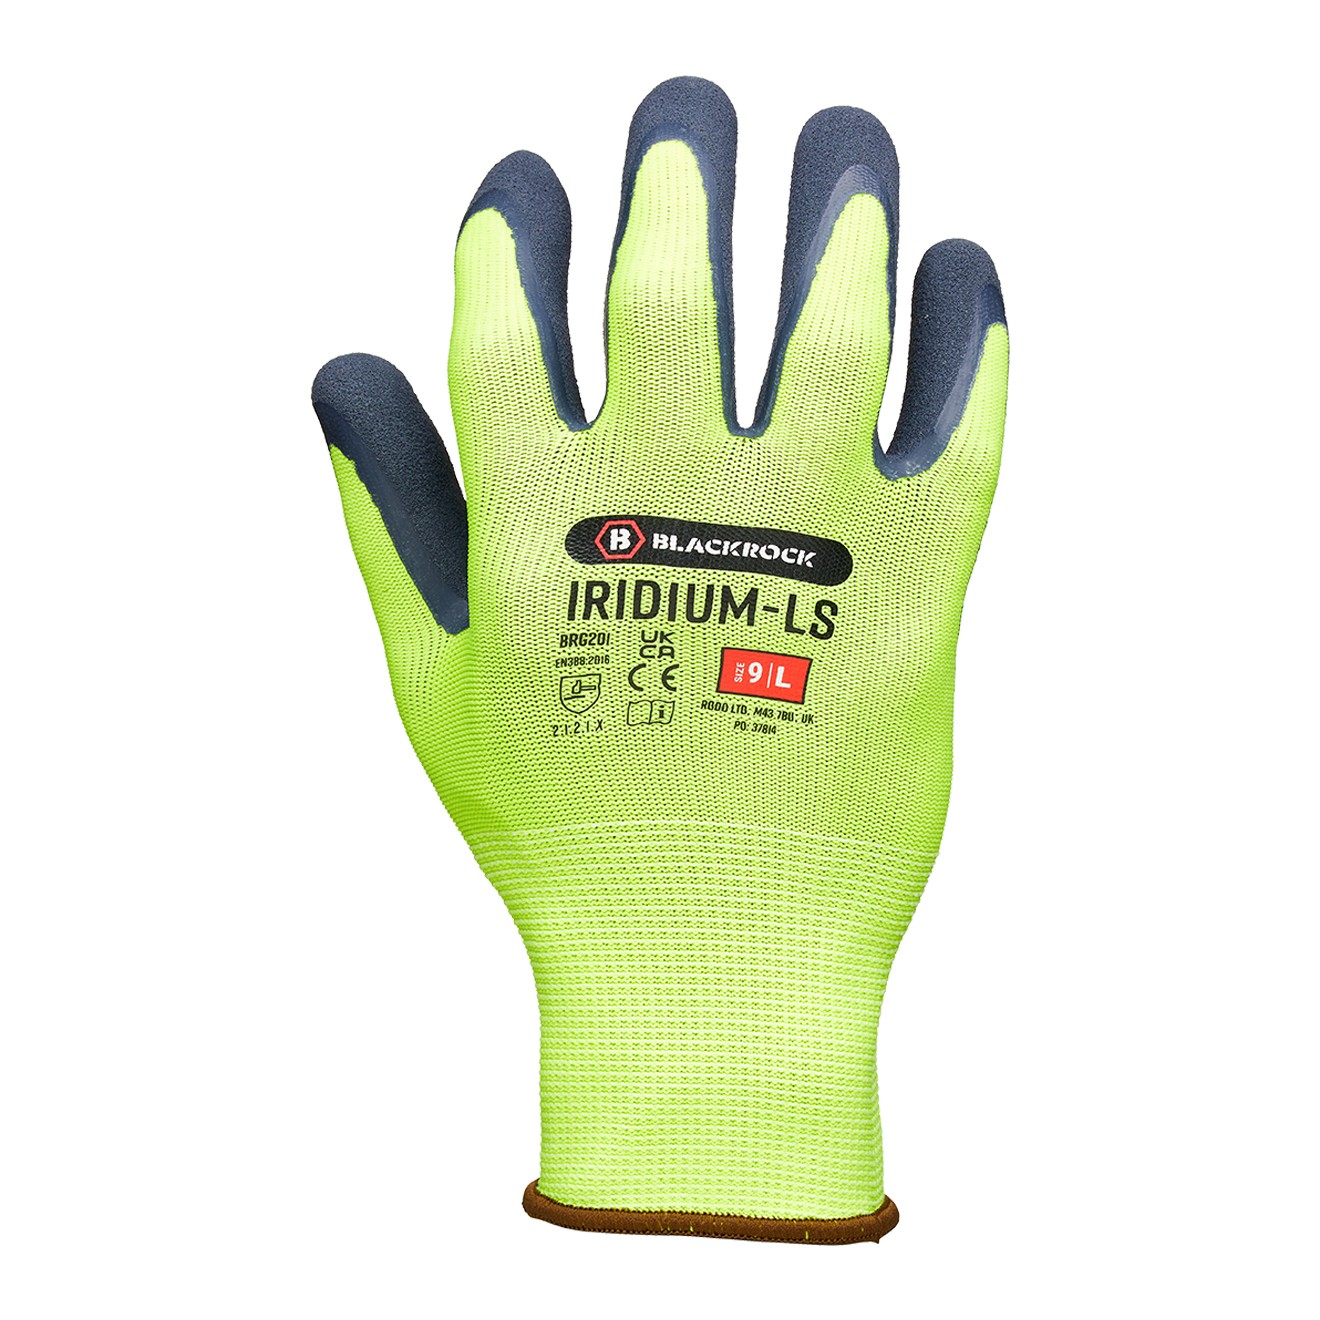 Iridium-LS Work Glove